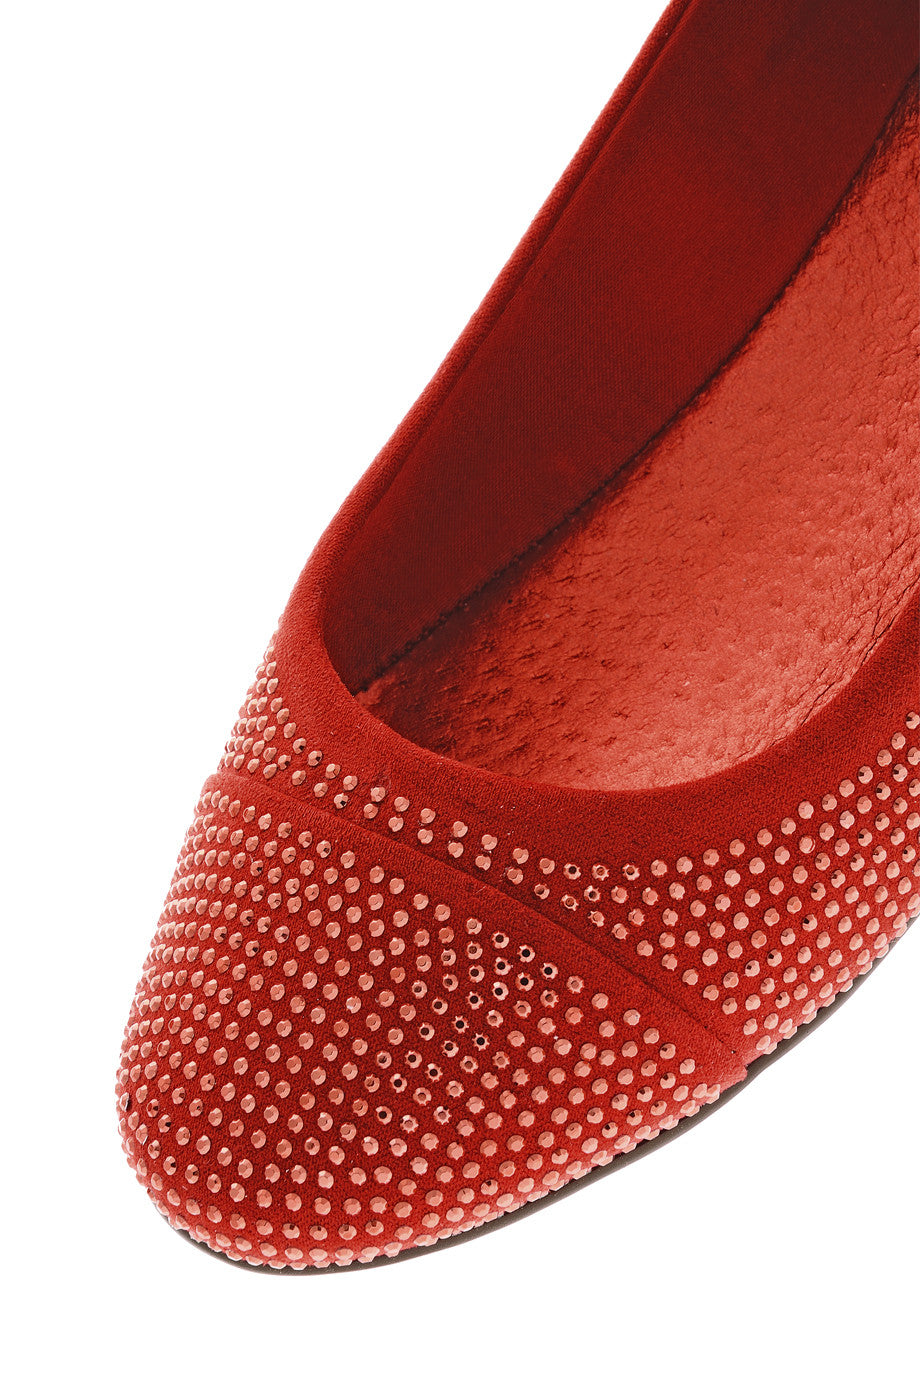 Κόκκινες Μπαλαρίνες με Στρας - Blink | Γυναικεία Παπούτσια